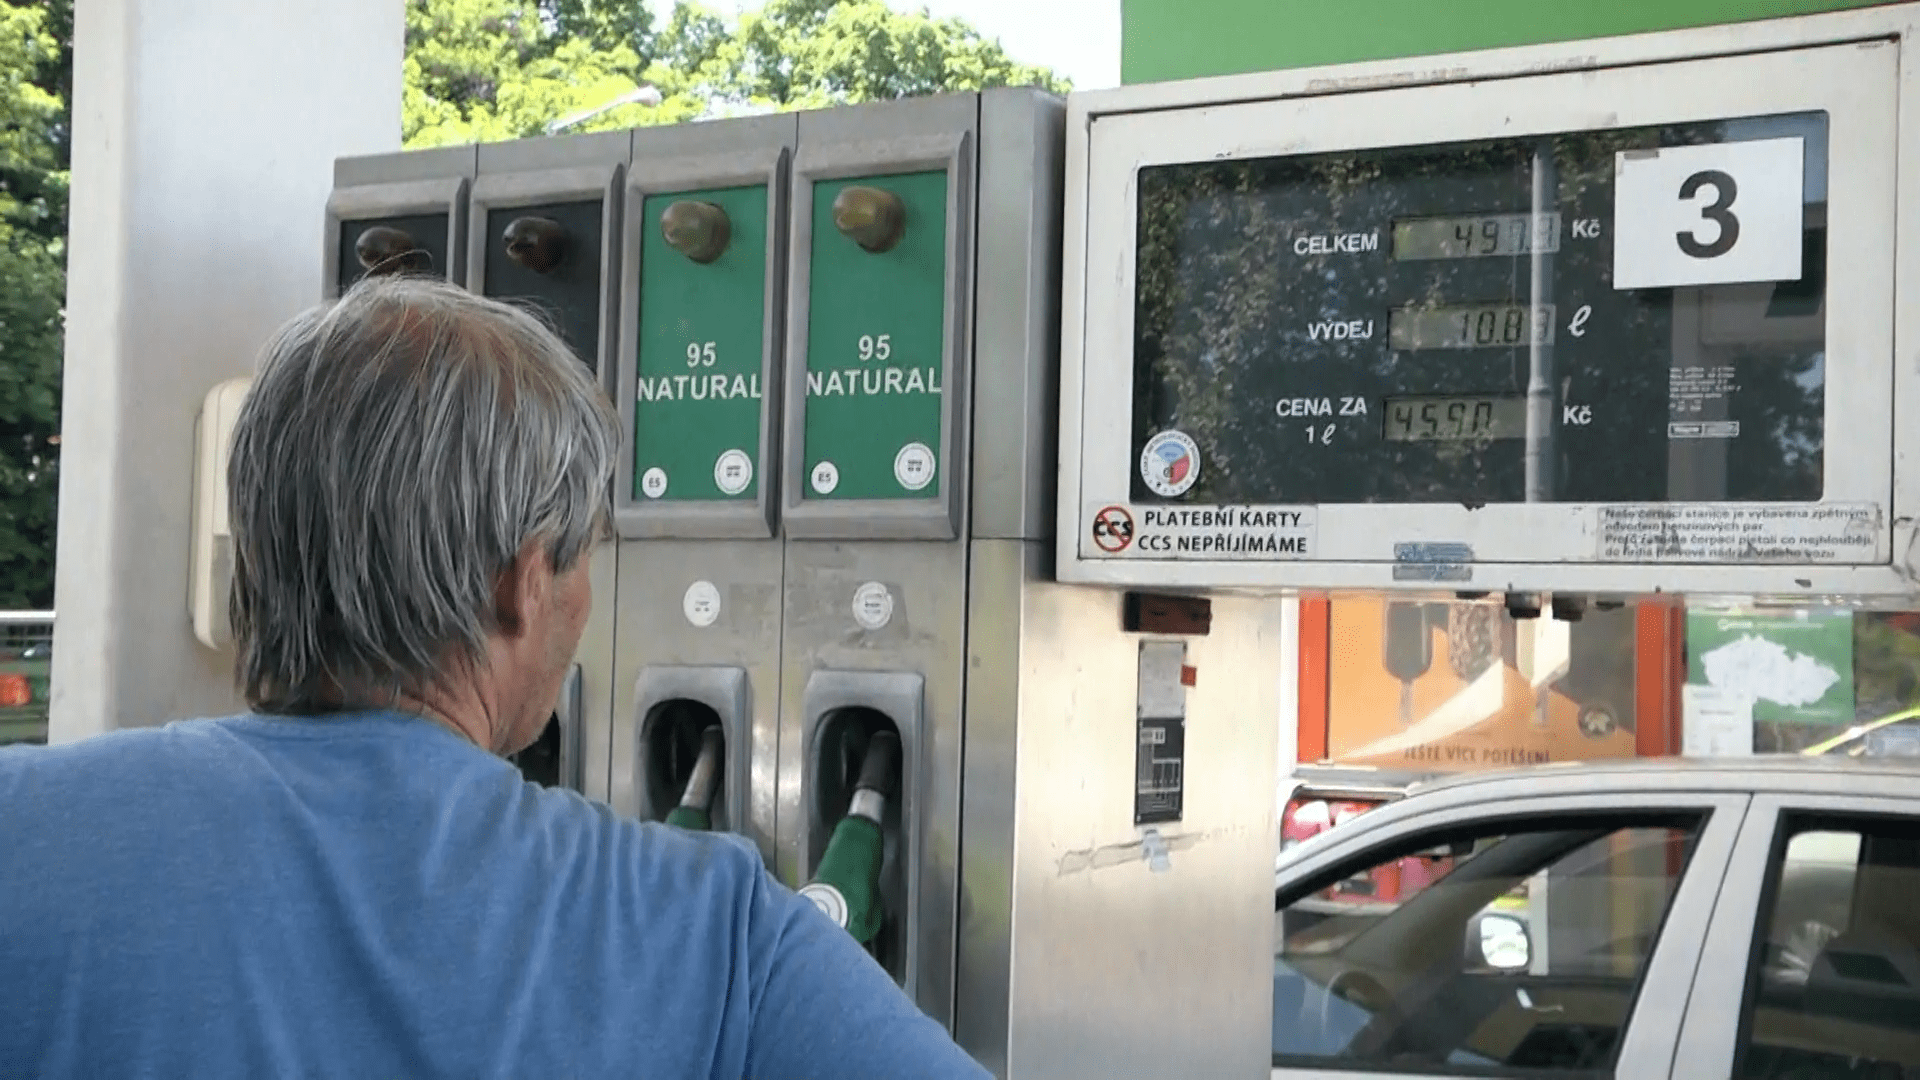 U stojanu specifikaci daného druhu tankovaného paliva nepoznáte, čerpadláři mají ale povinnost dodávat benzin či naftu vhodnou pro příslušné roční období.